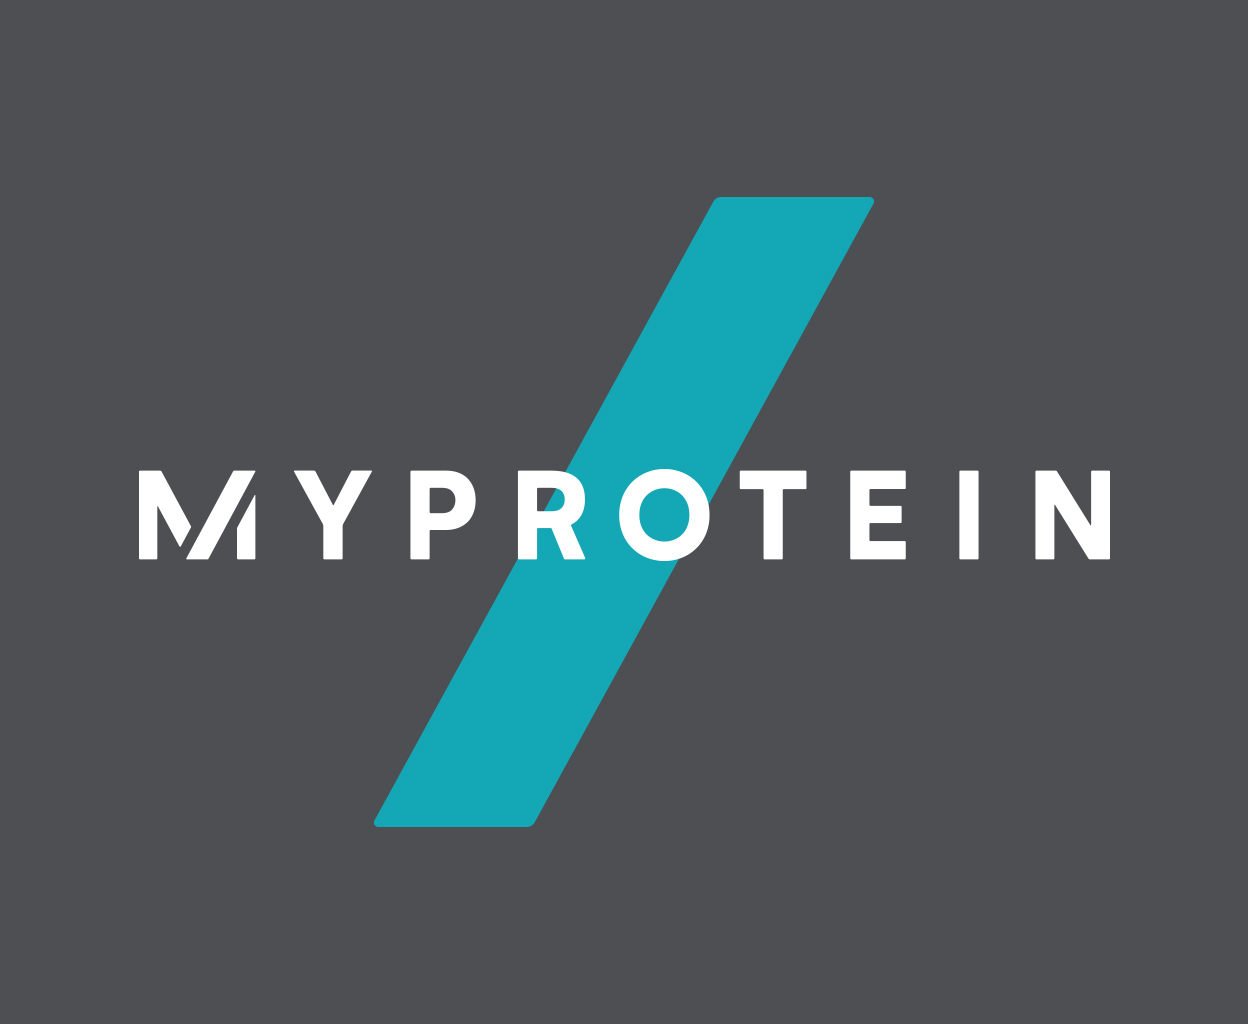 Myprotein APAC_logo